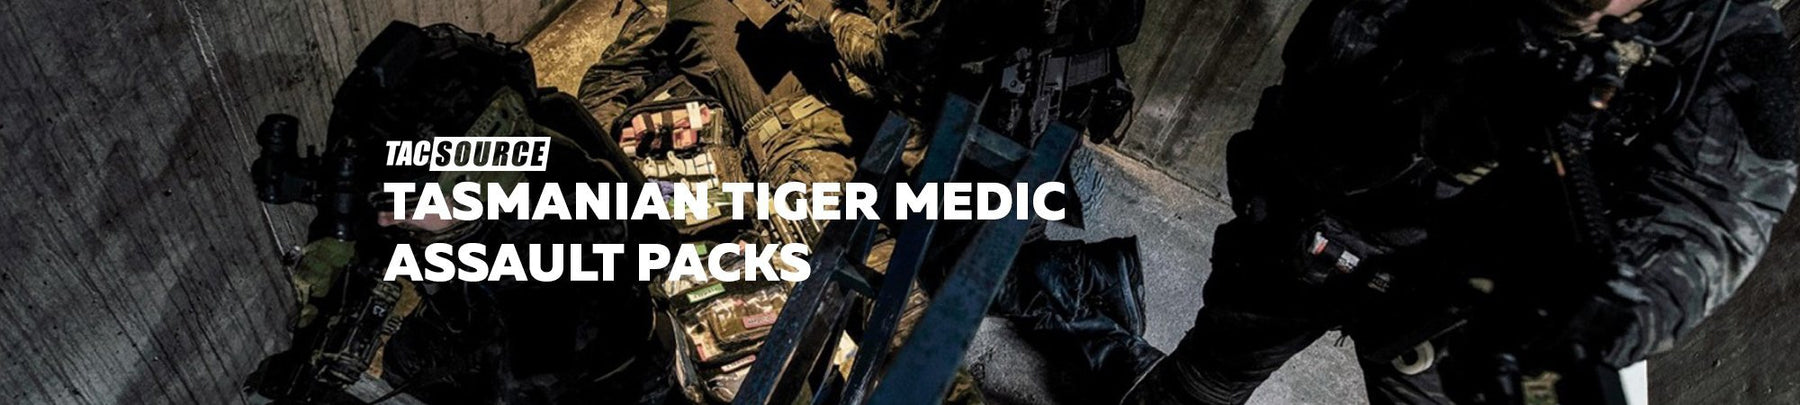 Tasmanian Tiger Medic Assault Packs-TacSource